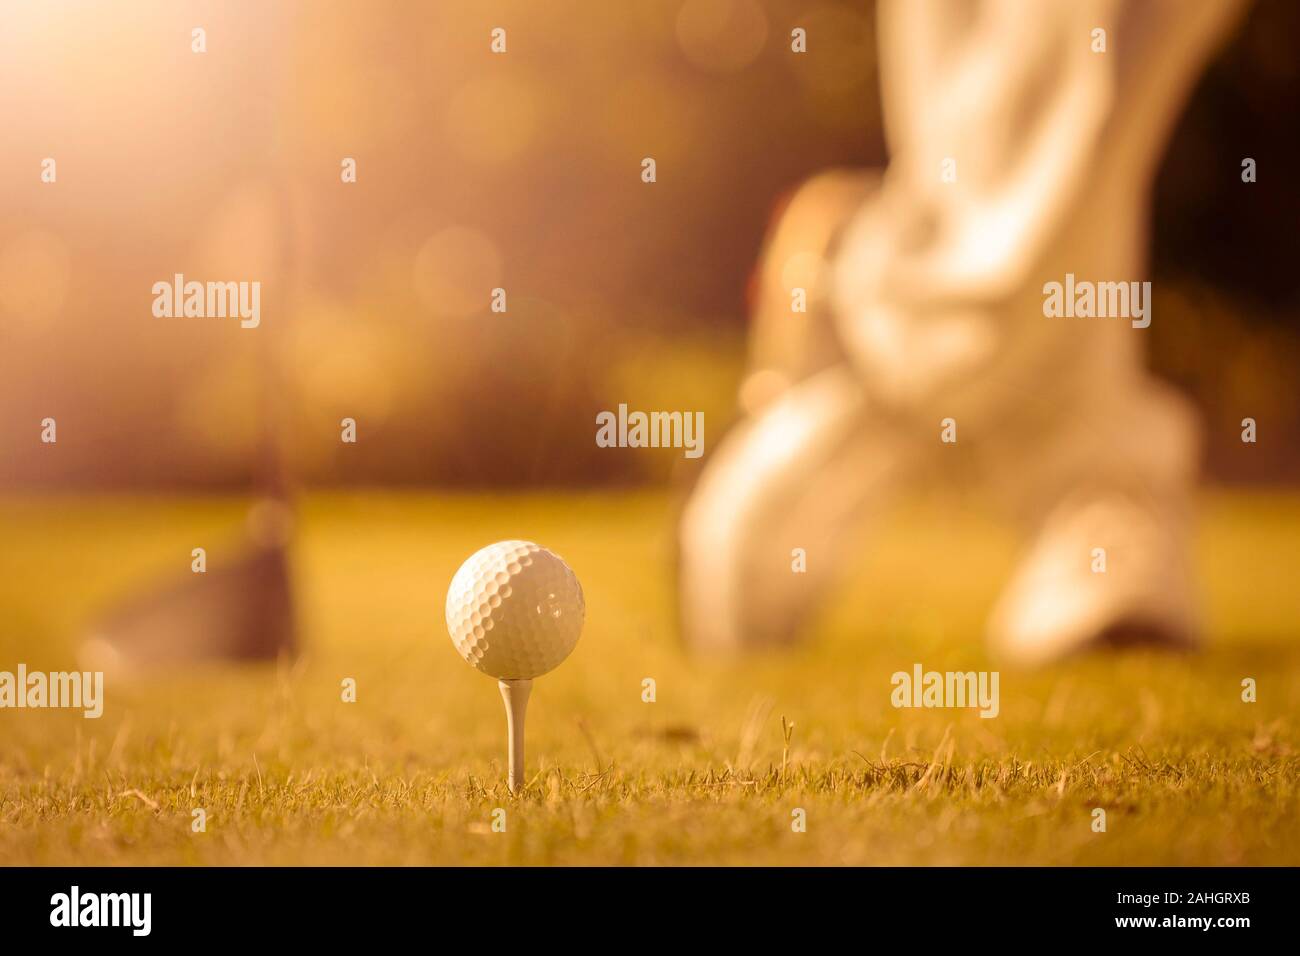 Bis auf Golf Ball nahe am T-Stück mit Golfspielern Schuhe und ein Holz Low Angle sun flare Hintergrund Stockfoto